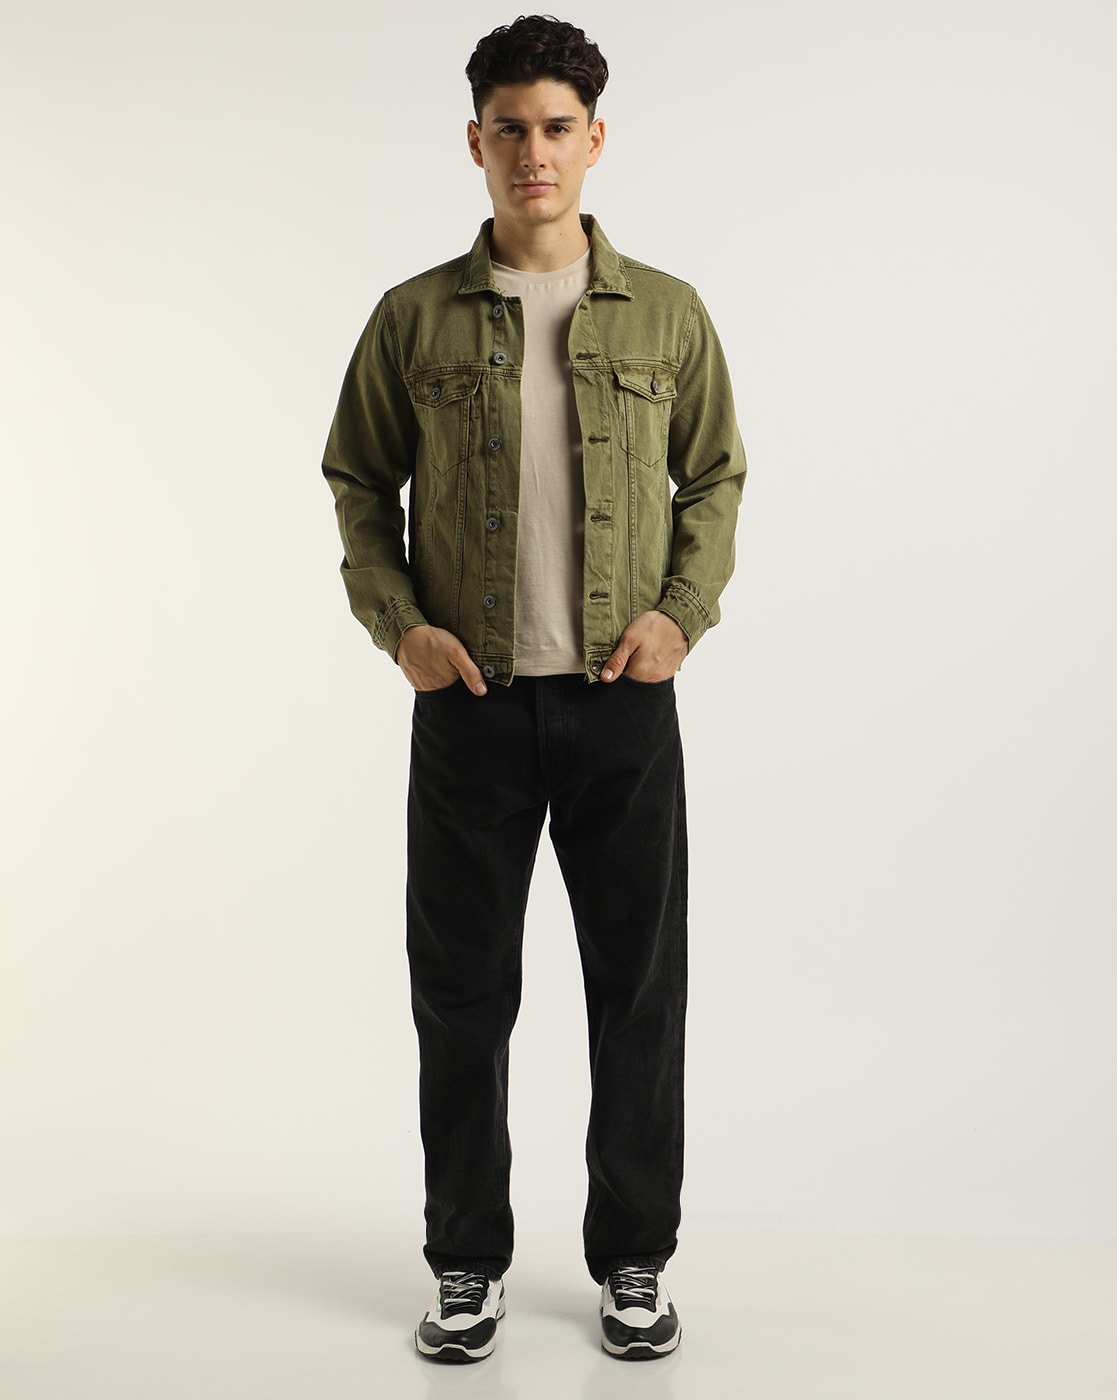 Men's Vintage Short Denim Style Real Suede Leather Jean Jacket Retro Olive  Green | eBay